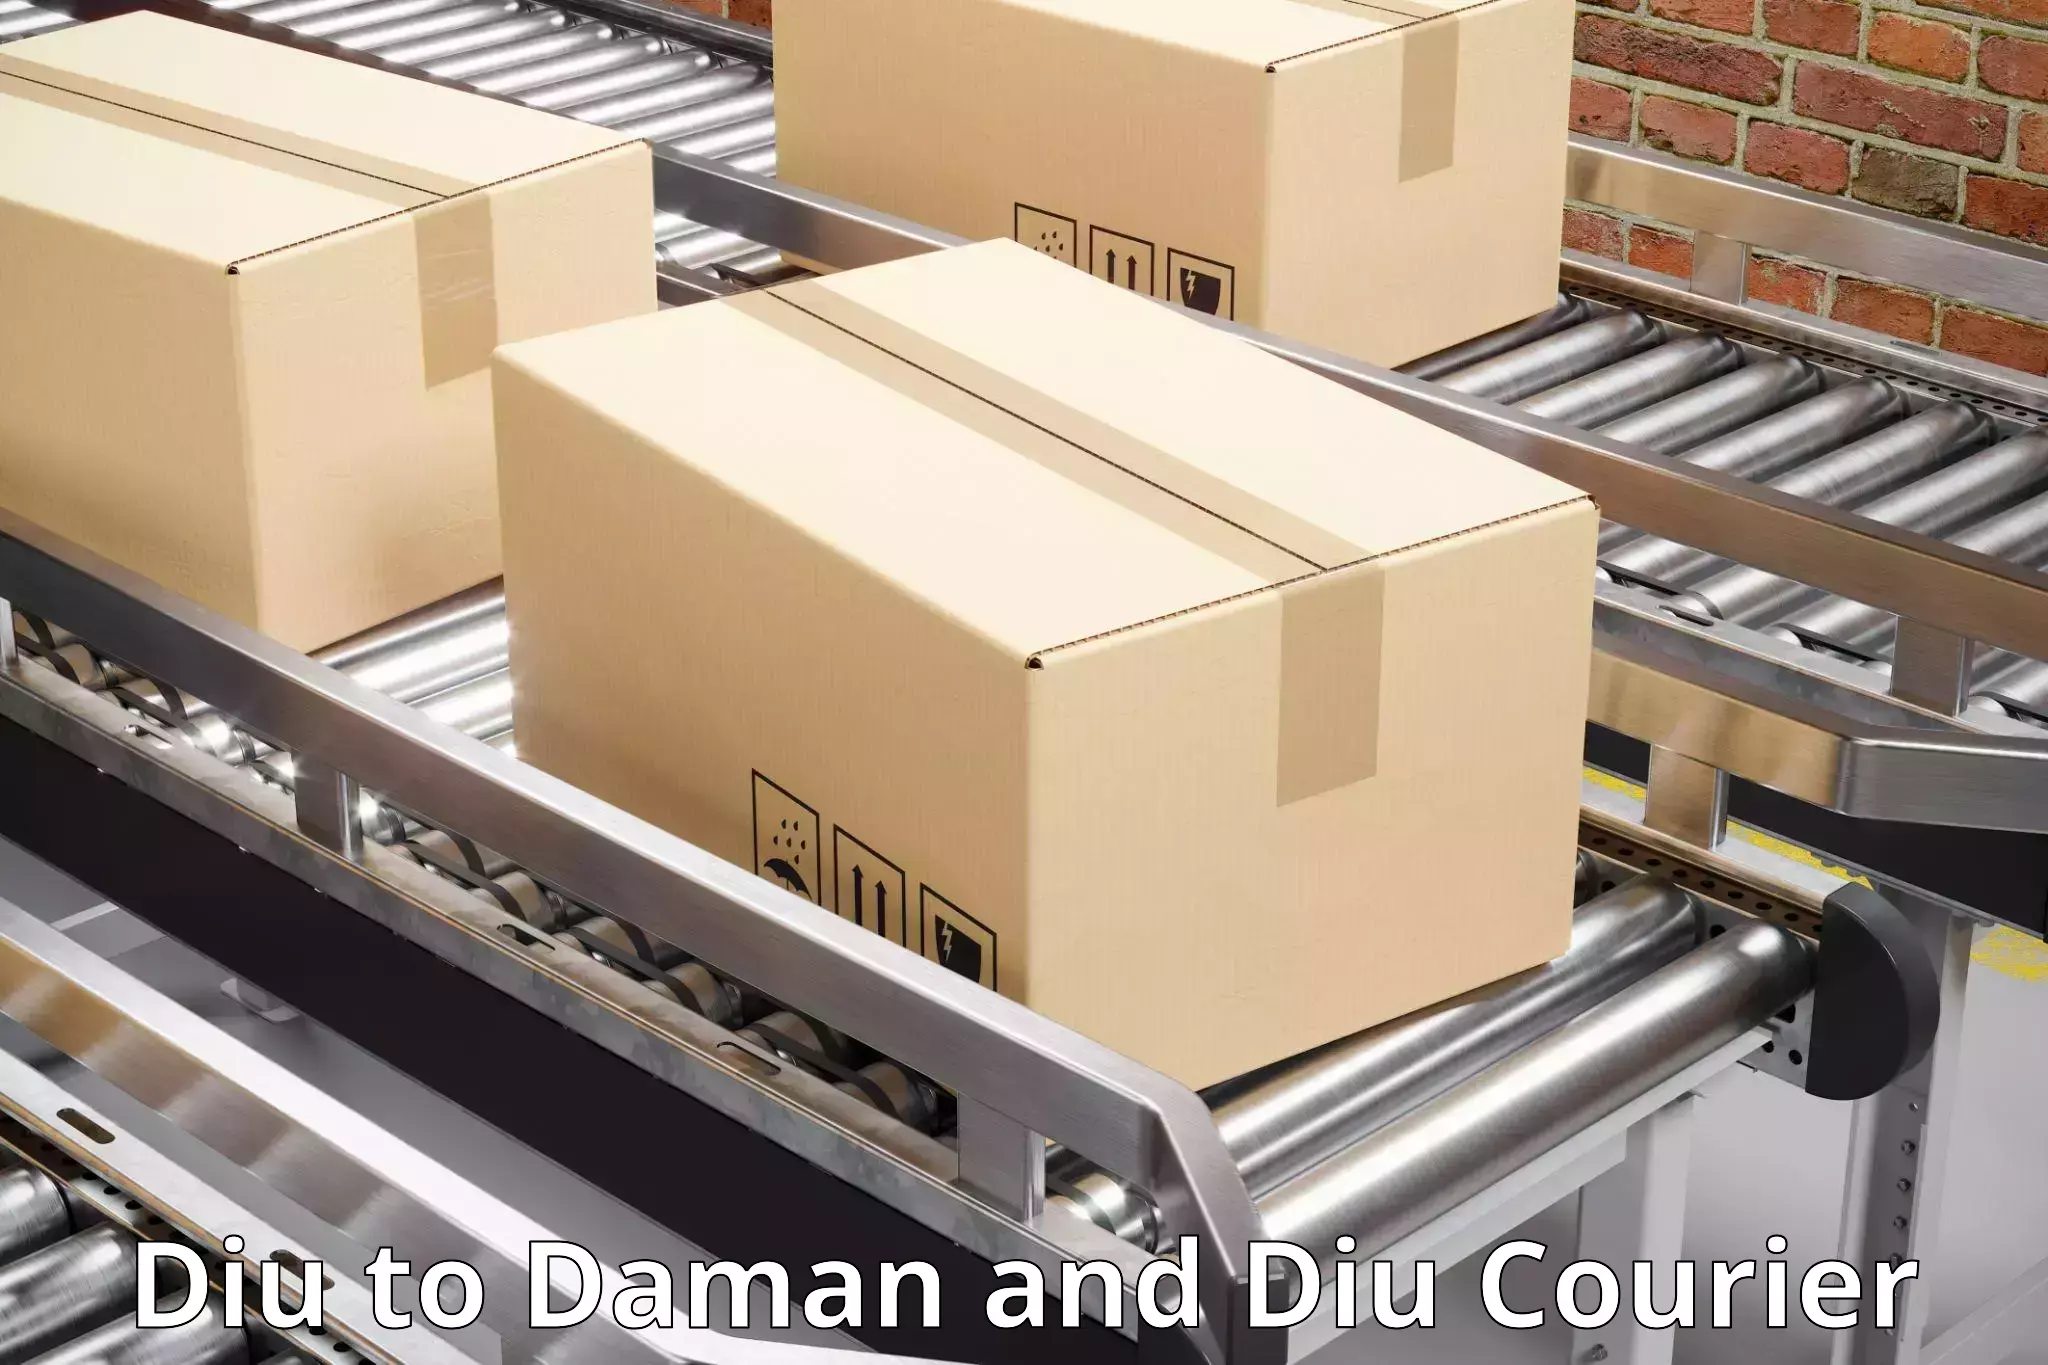 Expedited shipping methods Diu to Daman and Diu